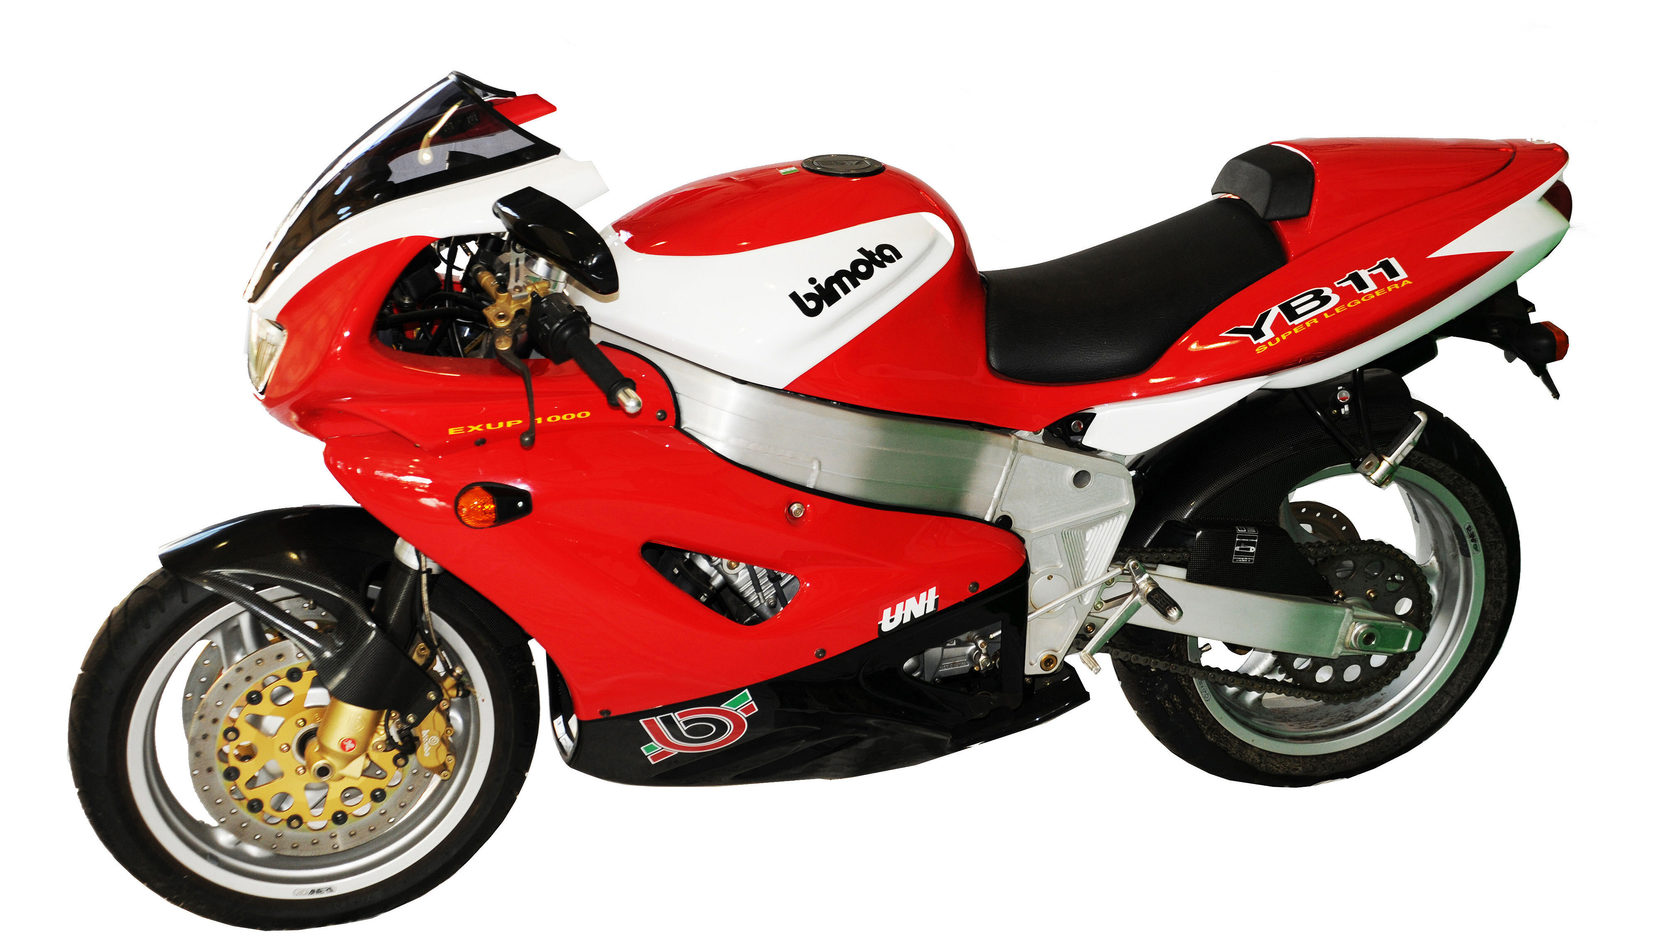 Мотоцикл bimota yb11 superleggera 1996 фото, характеристики, обзор, сравнение на базамото